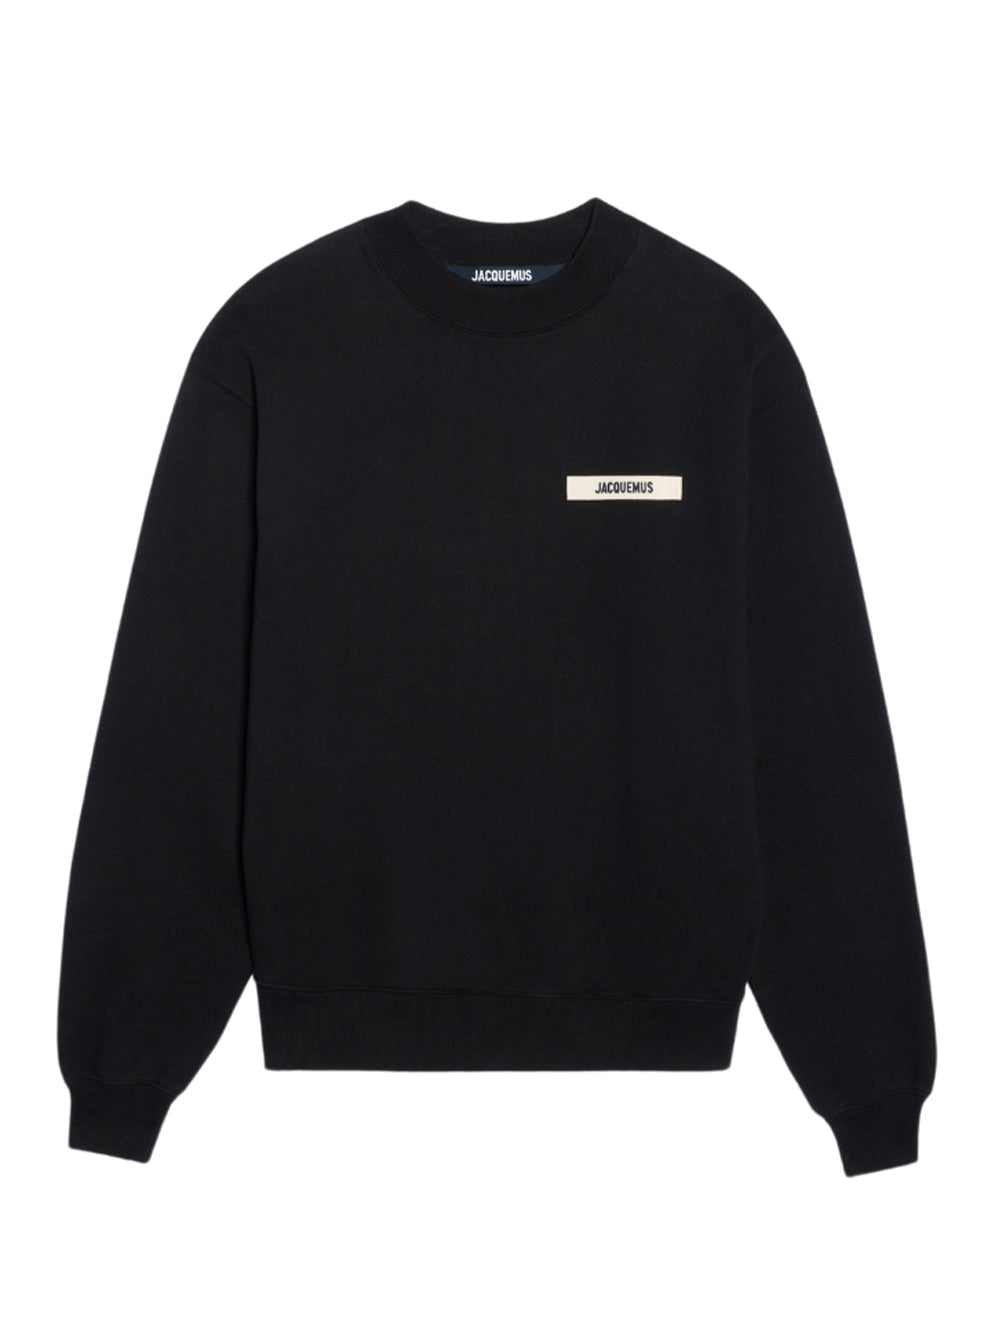 Le Sweatshirt Gros Grain (Black)